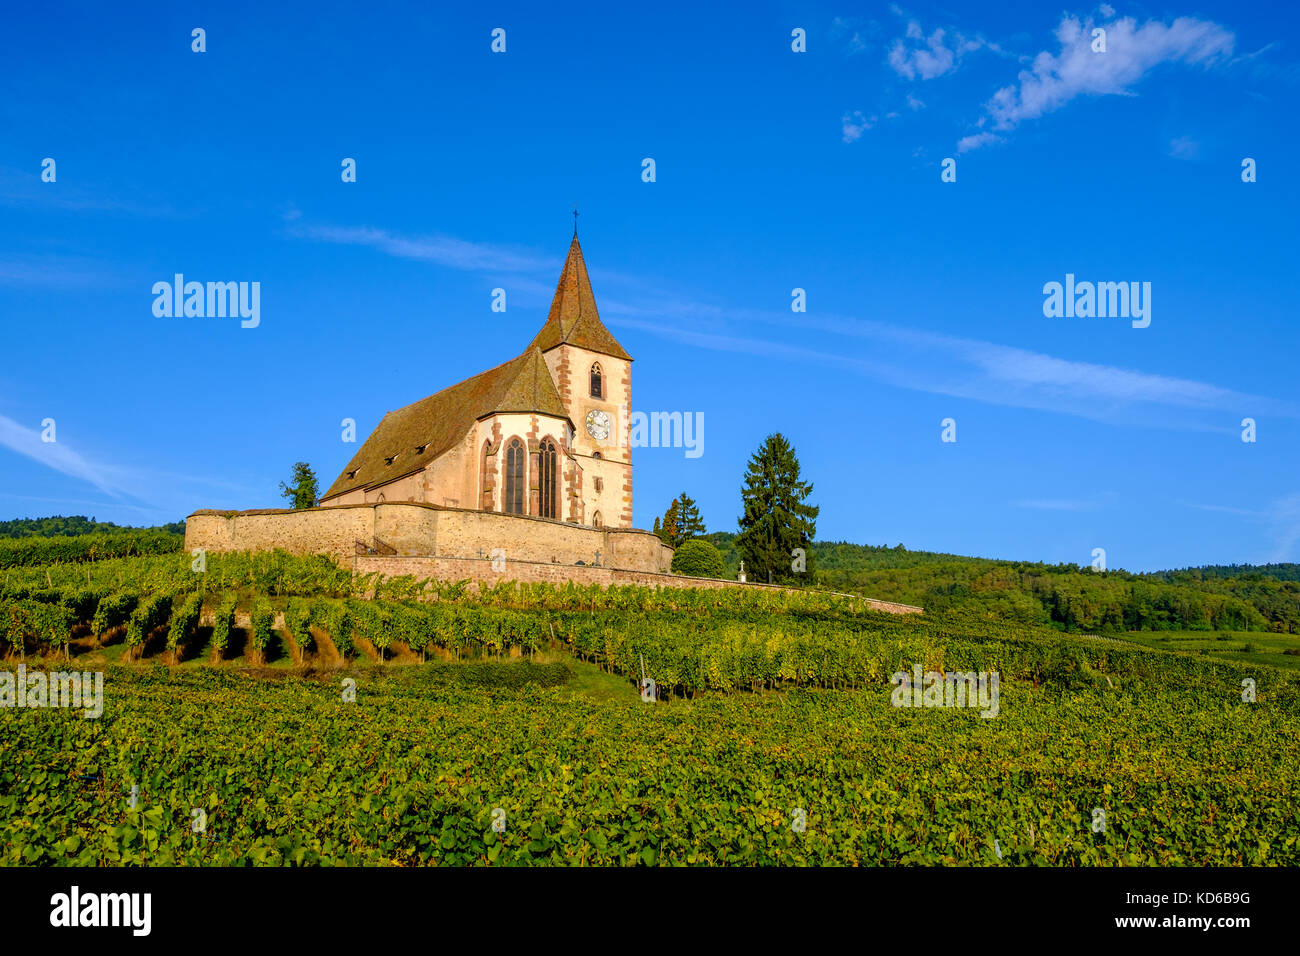 Chiesa ecumenica saint-jacques-le-majeur è situato tra i vigneti che circondano il villaggio storico ai piedi delle colline in Alsace Foto Stock